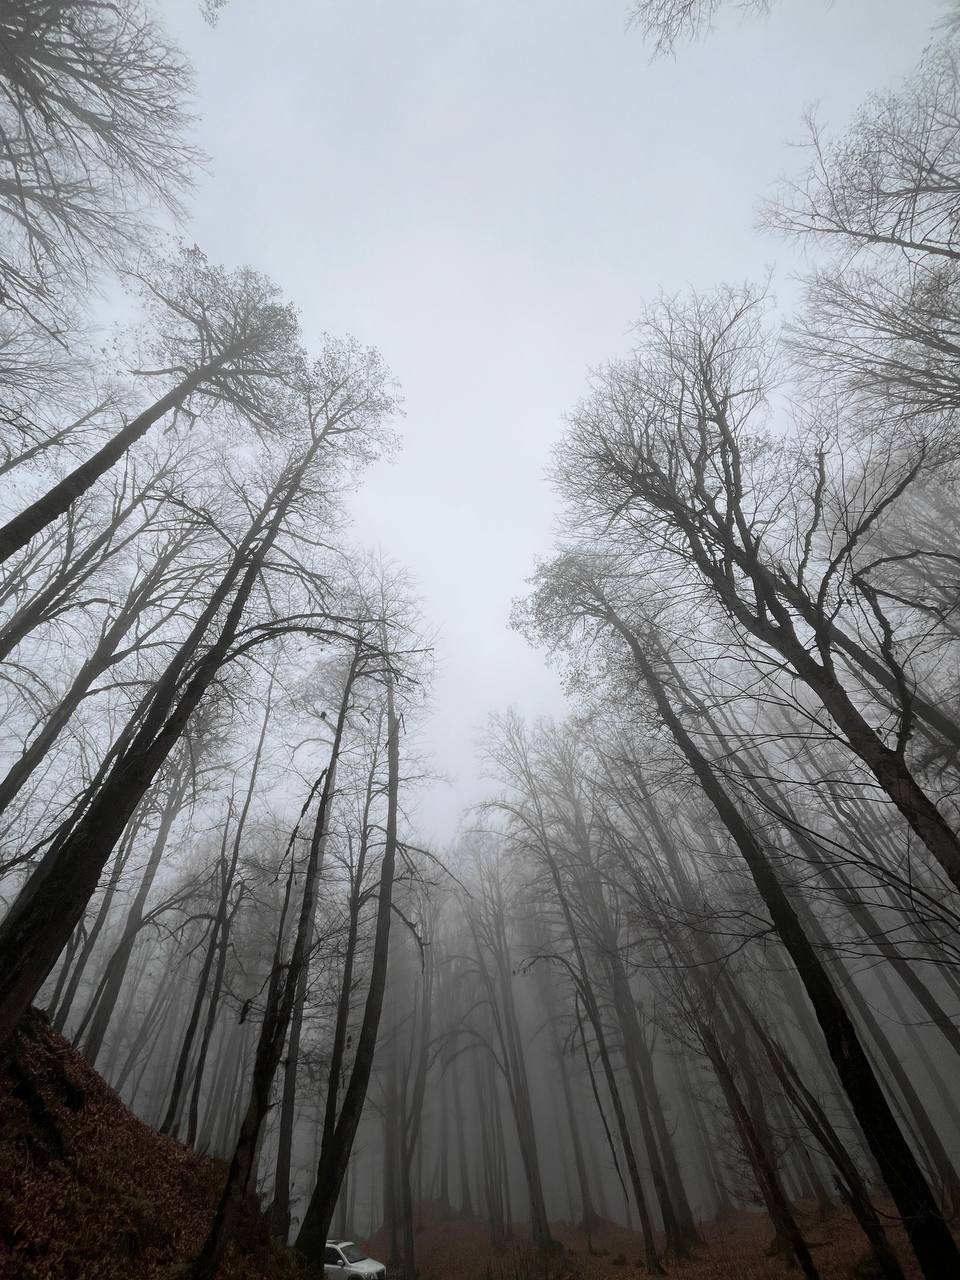 جنگل تاریک و درختان بلند پیرامون مرداب 